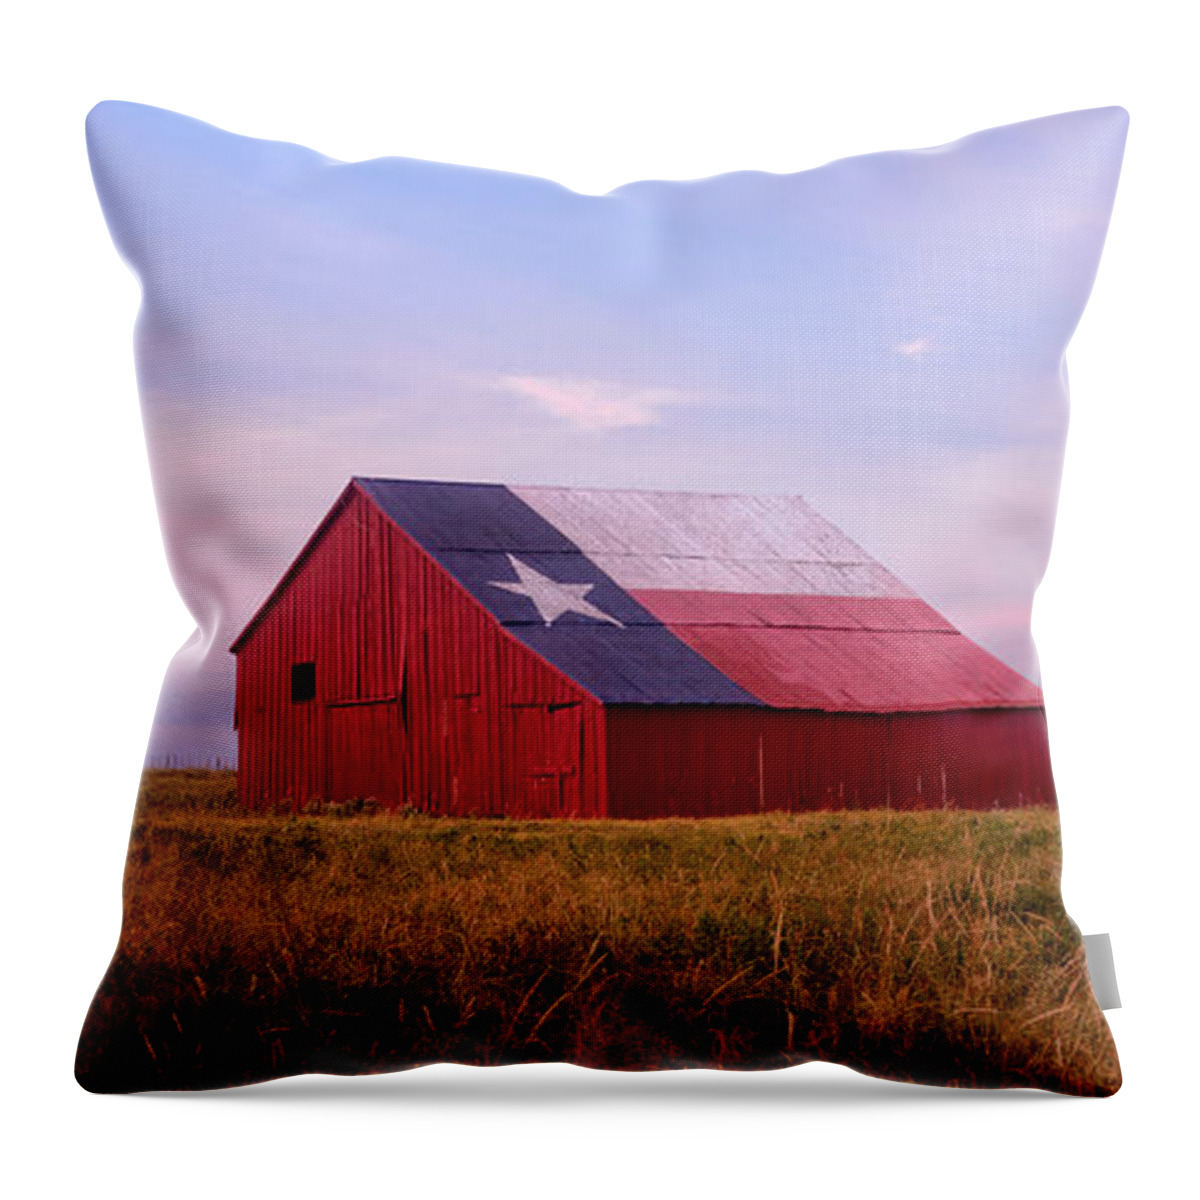 Texas Throw Pillow featuring the photograph A Texas Star Barn by Ronda Kimbrow